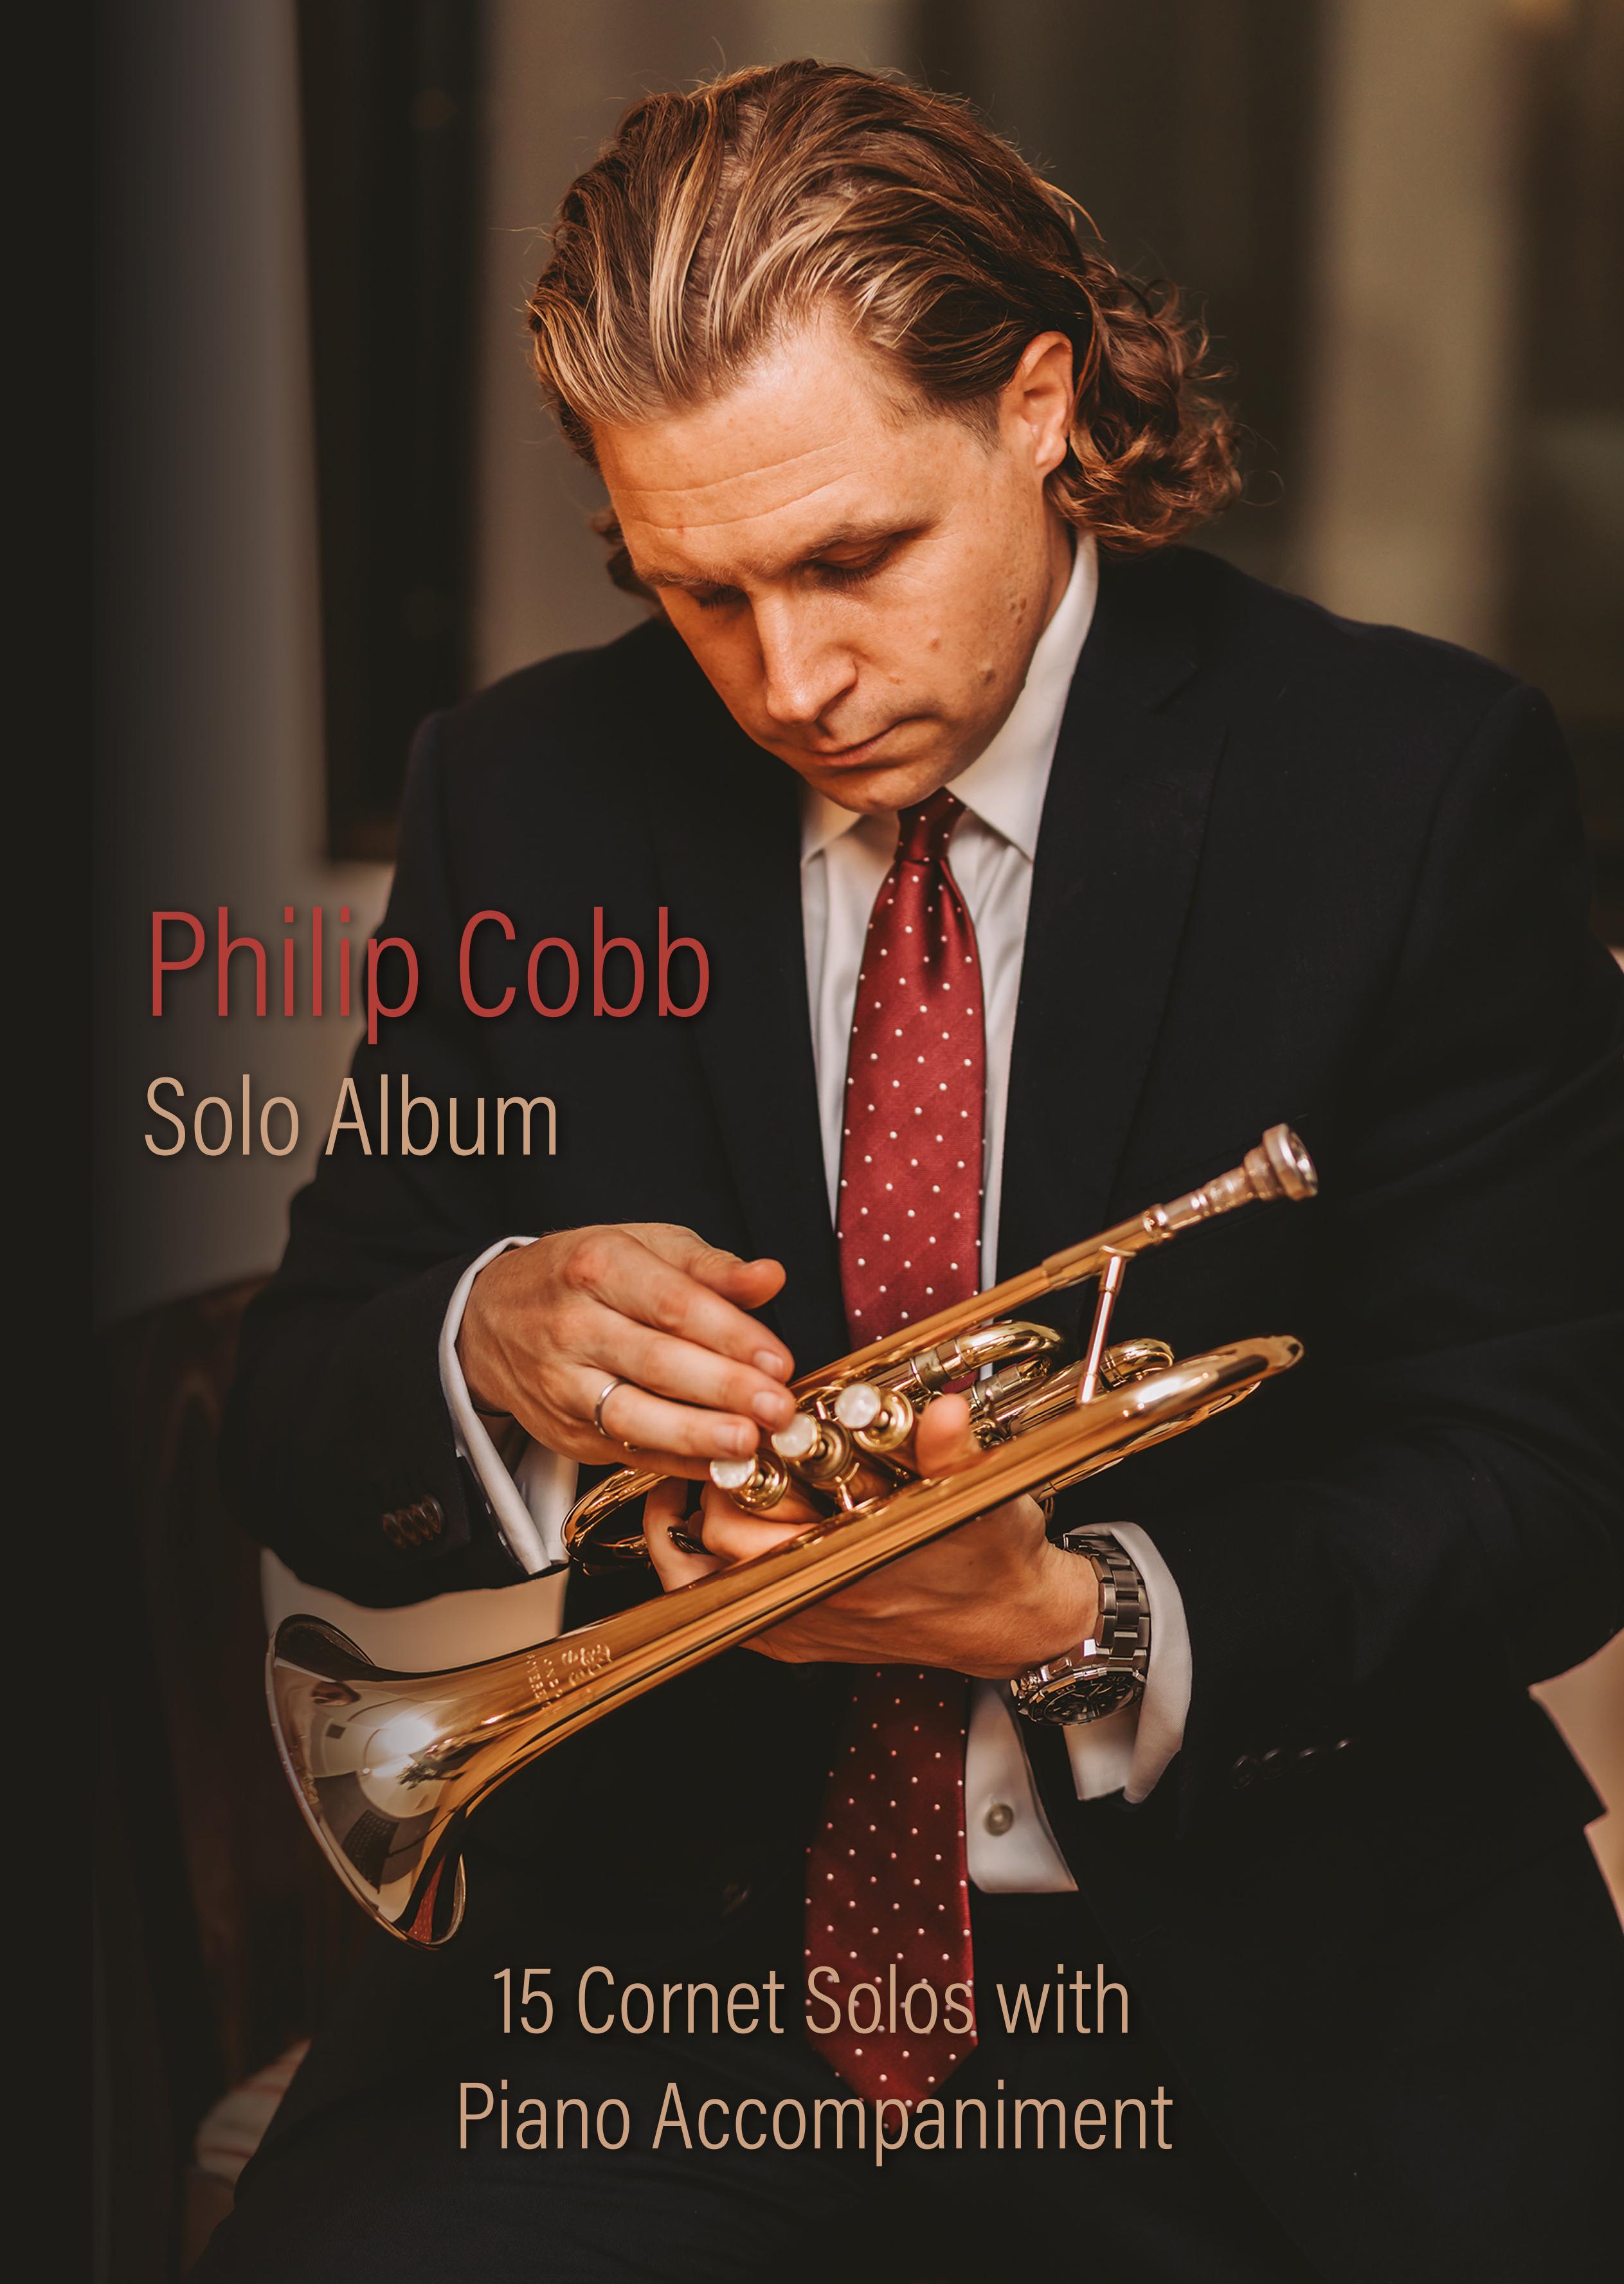 Philip Cobb Solo Album (Cornet Solos with Piano Accompaniment)